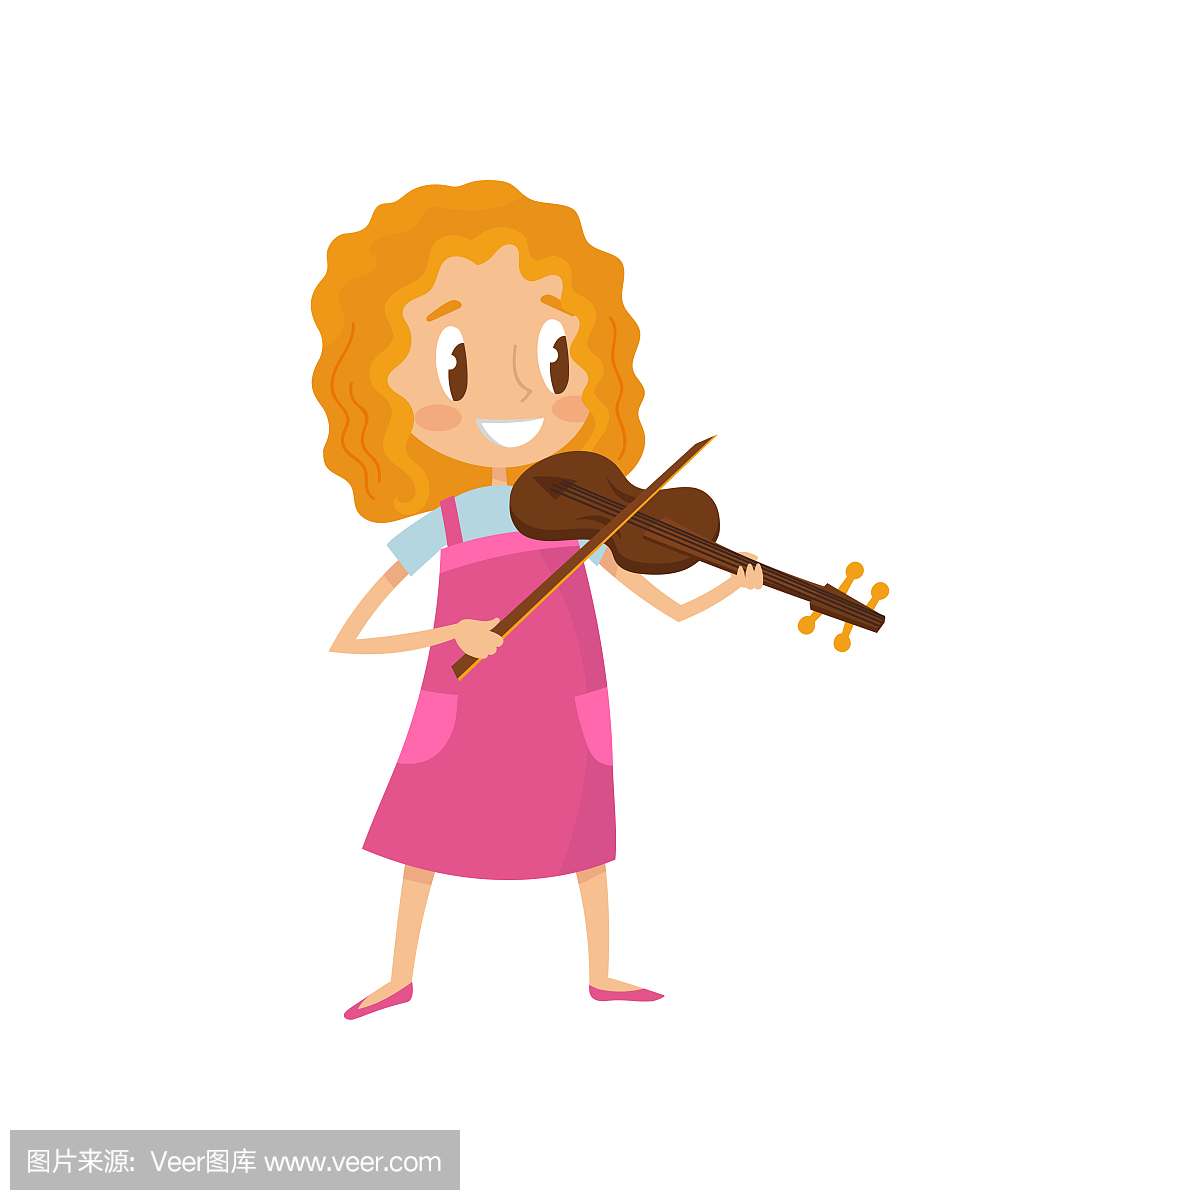 可爱的女孩,小提琴,有乐趣的小音乐家人物与乐